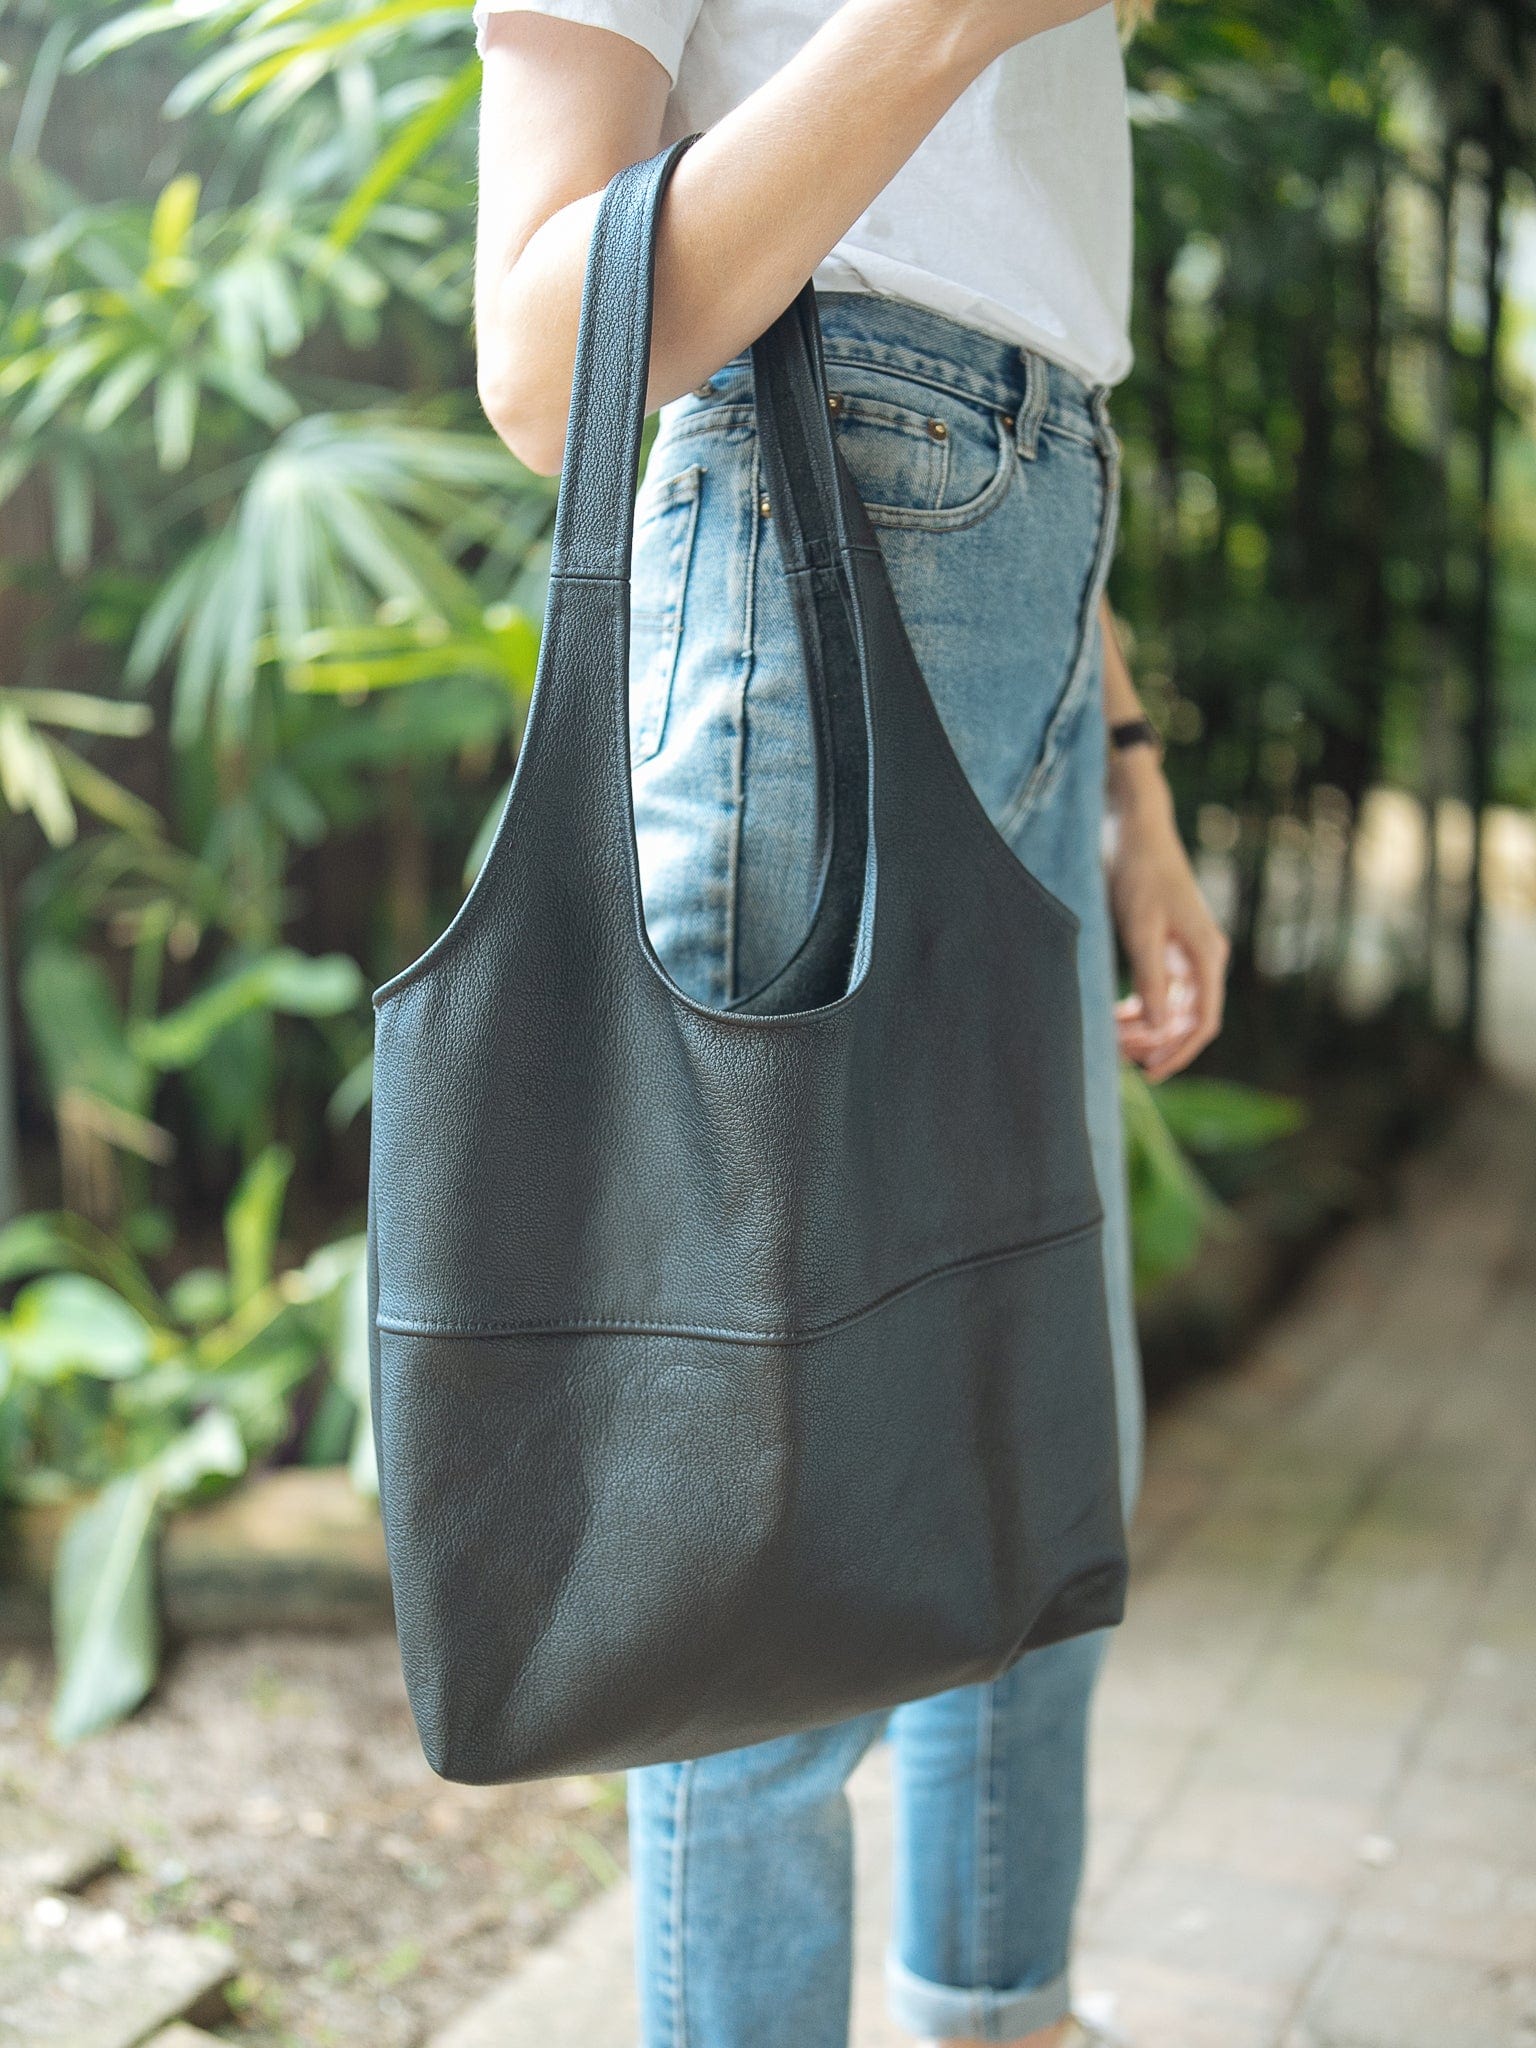 安い超激安real leather handmade bag denim pocket トートバッグ